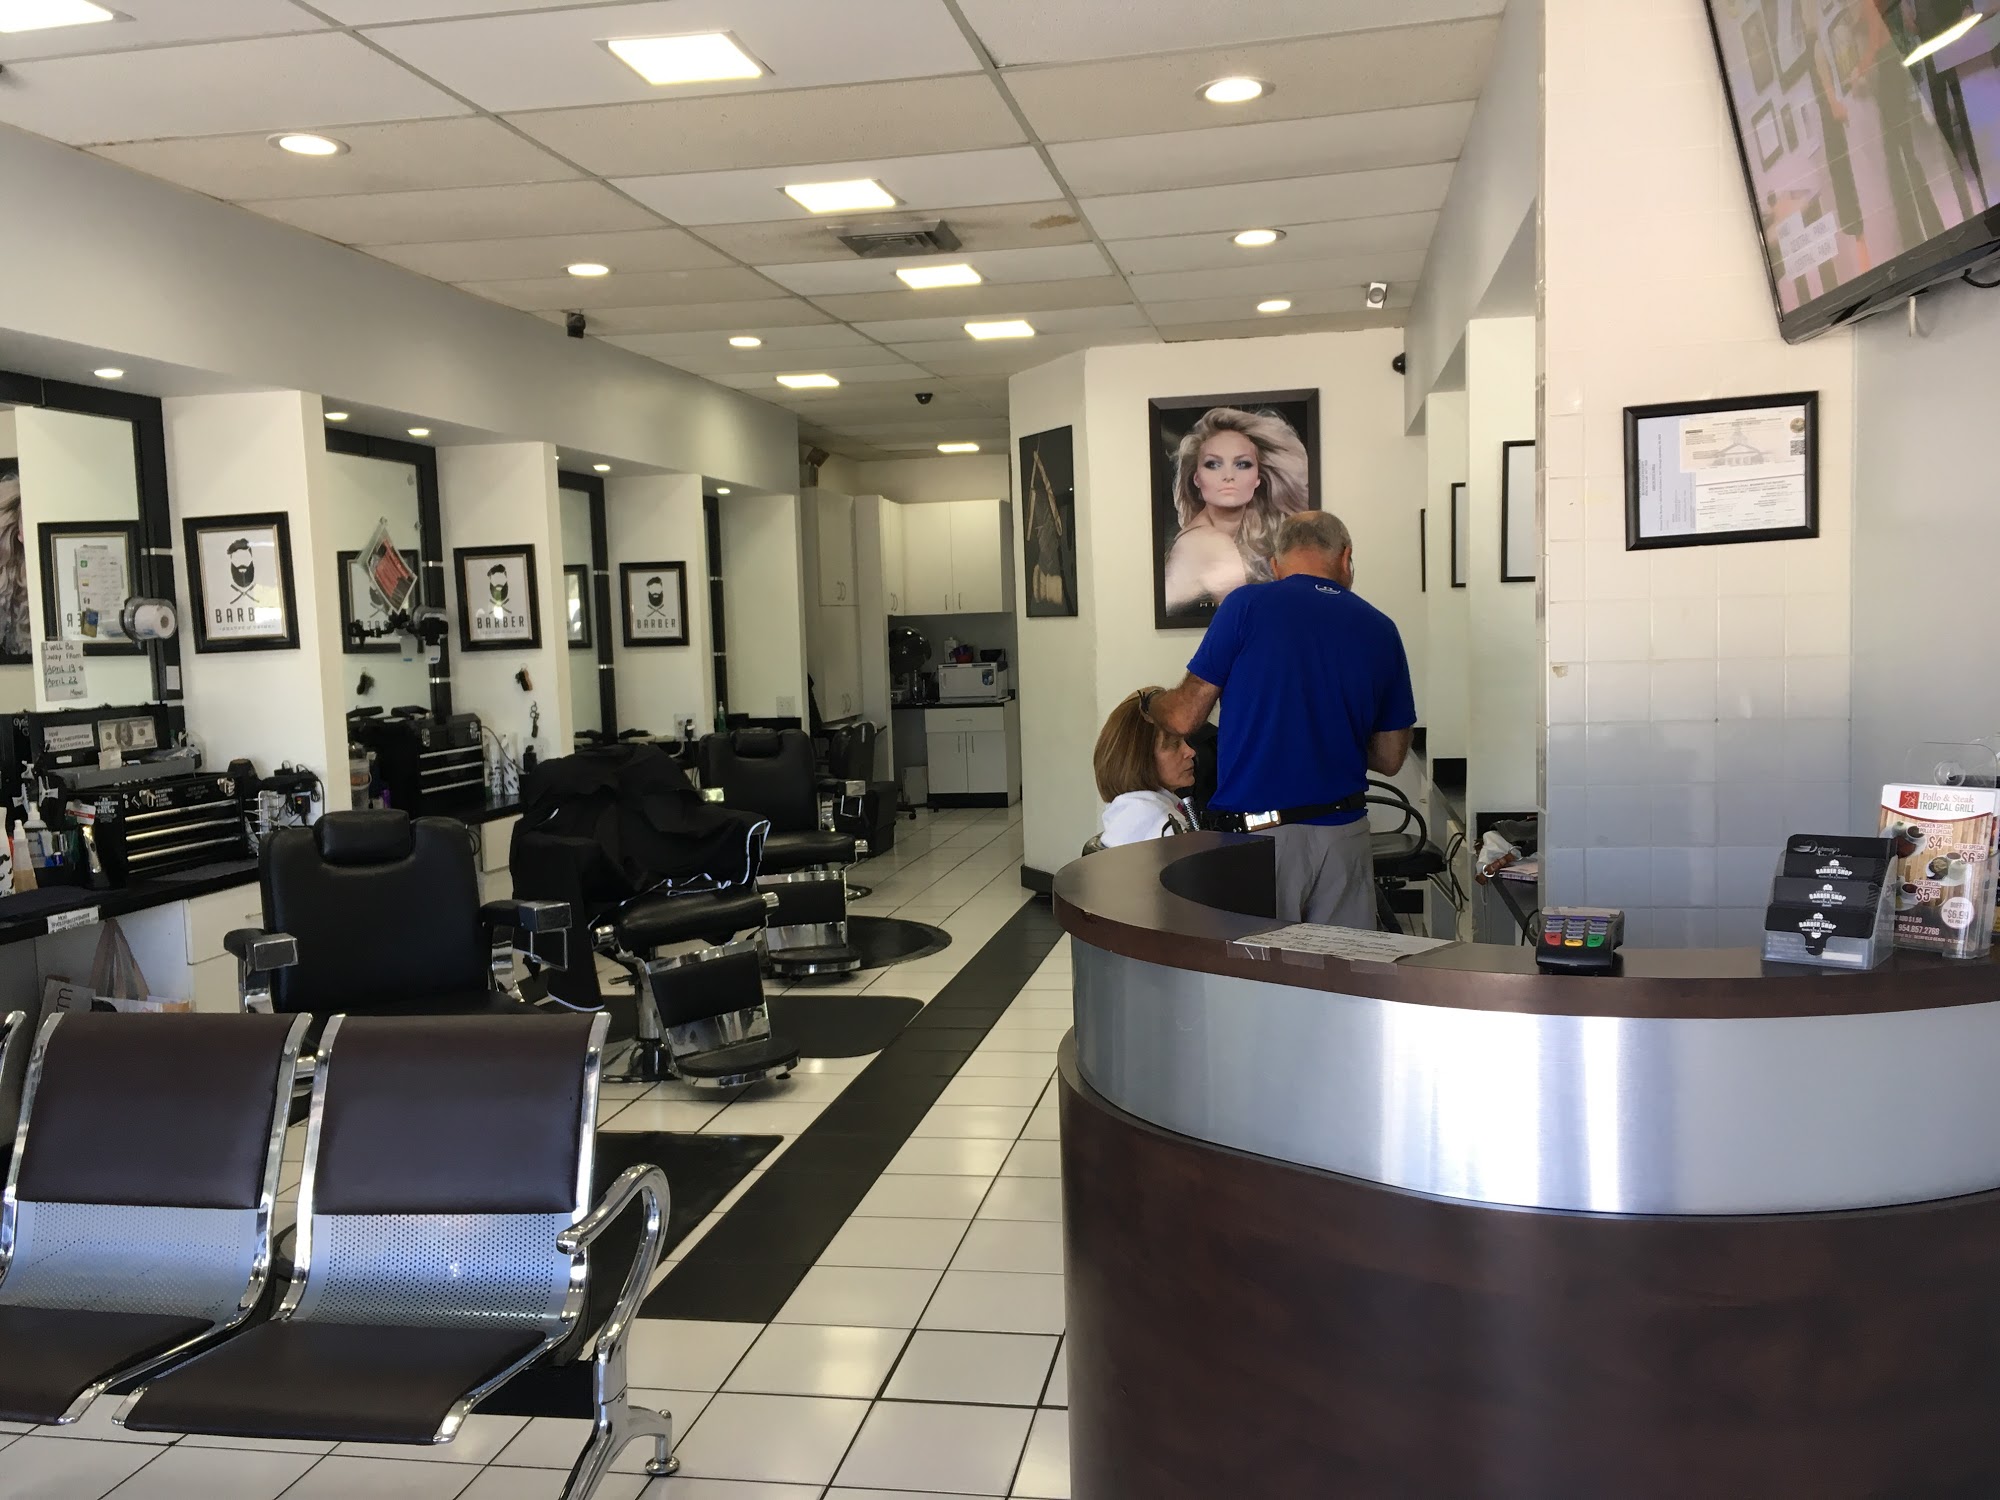 Delanas Salon & Barber Shop